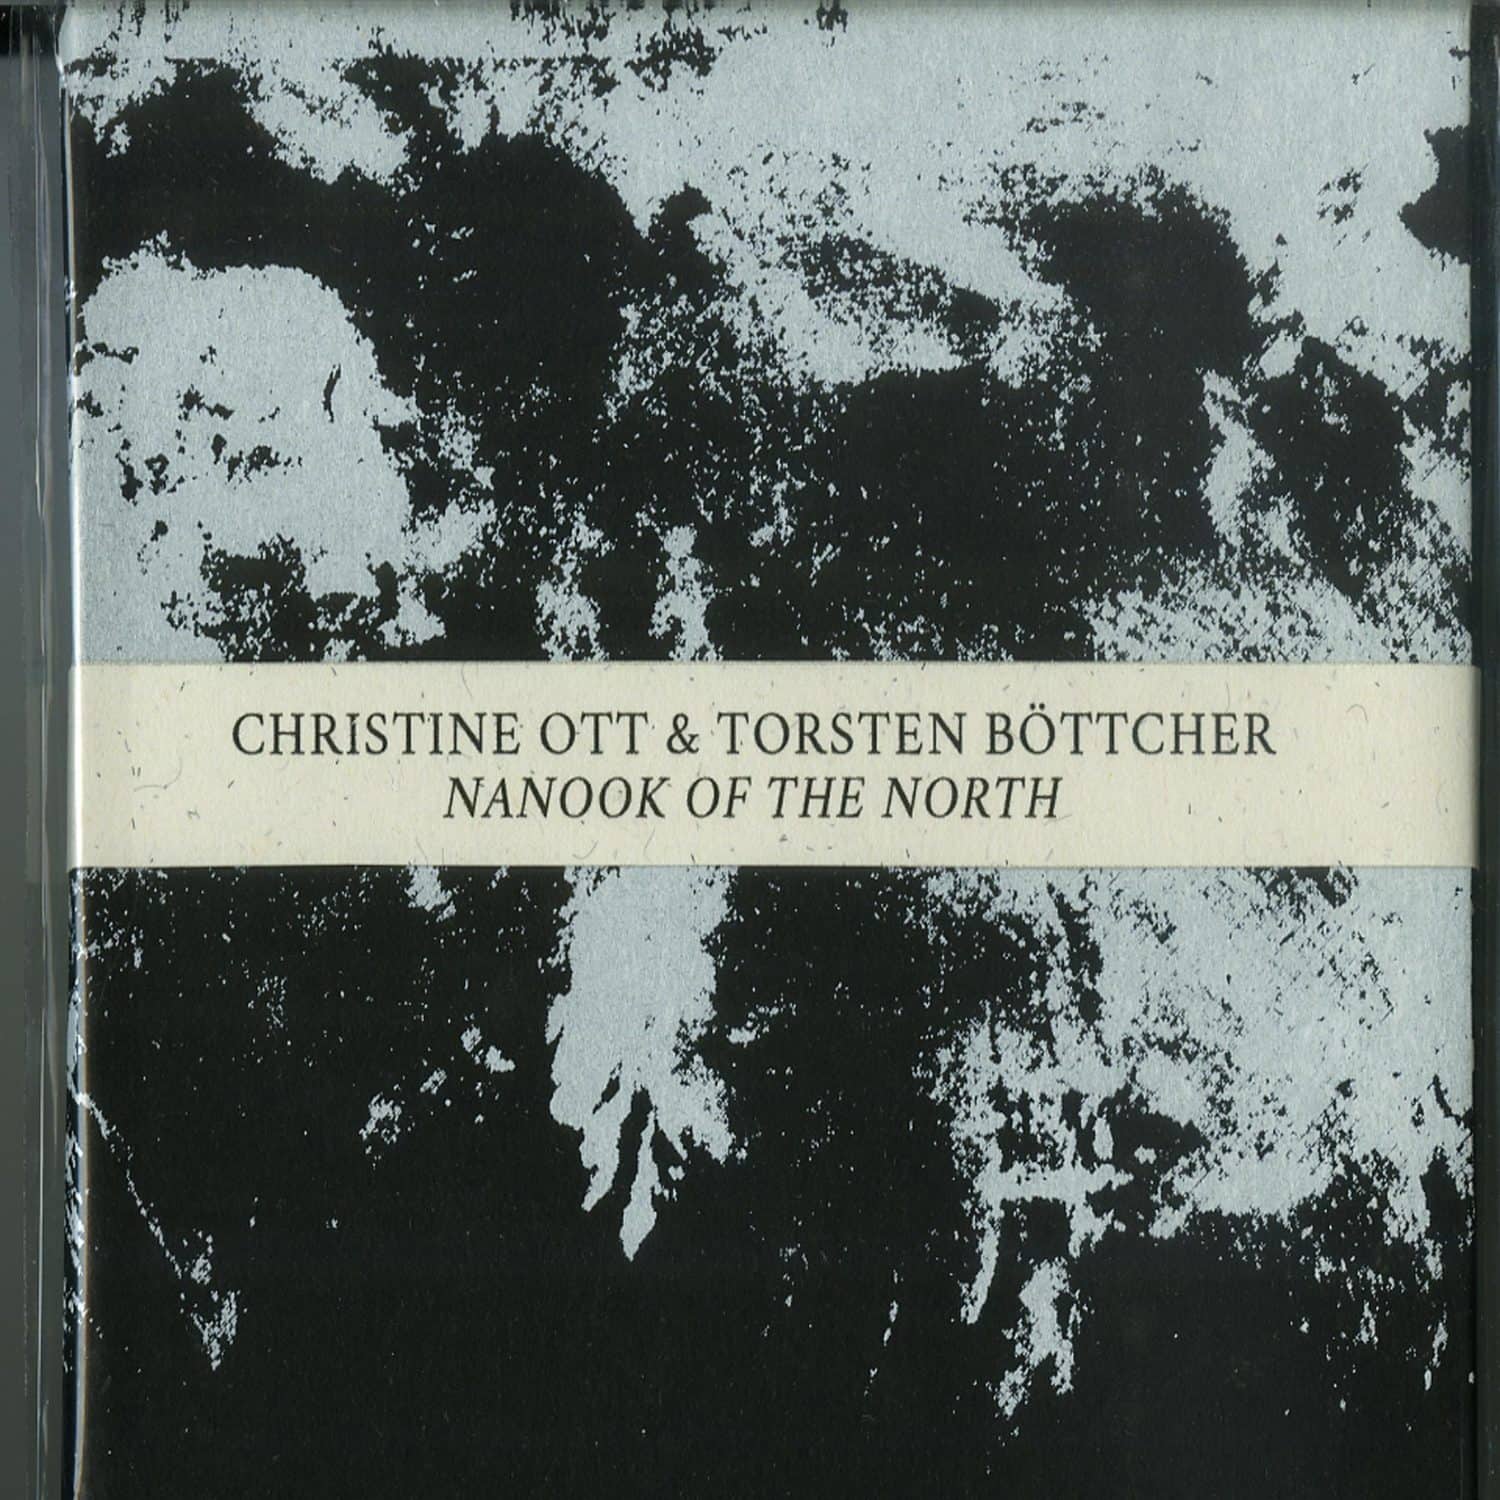 Christine Ott and Torsten Boettcher - NANOOK OF THE NORTH 